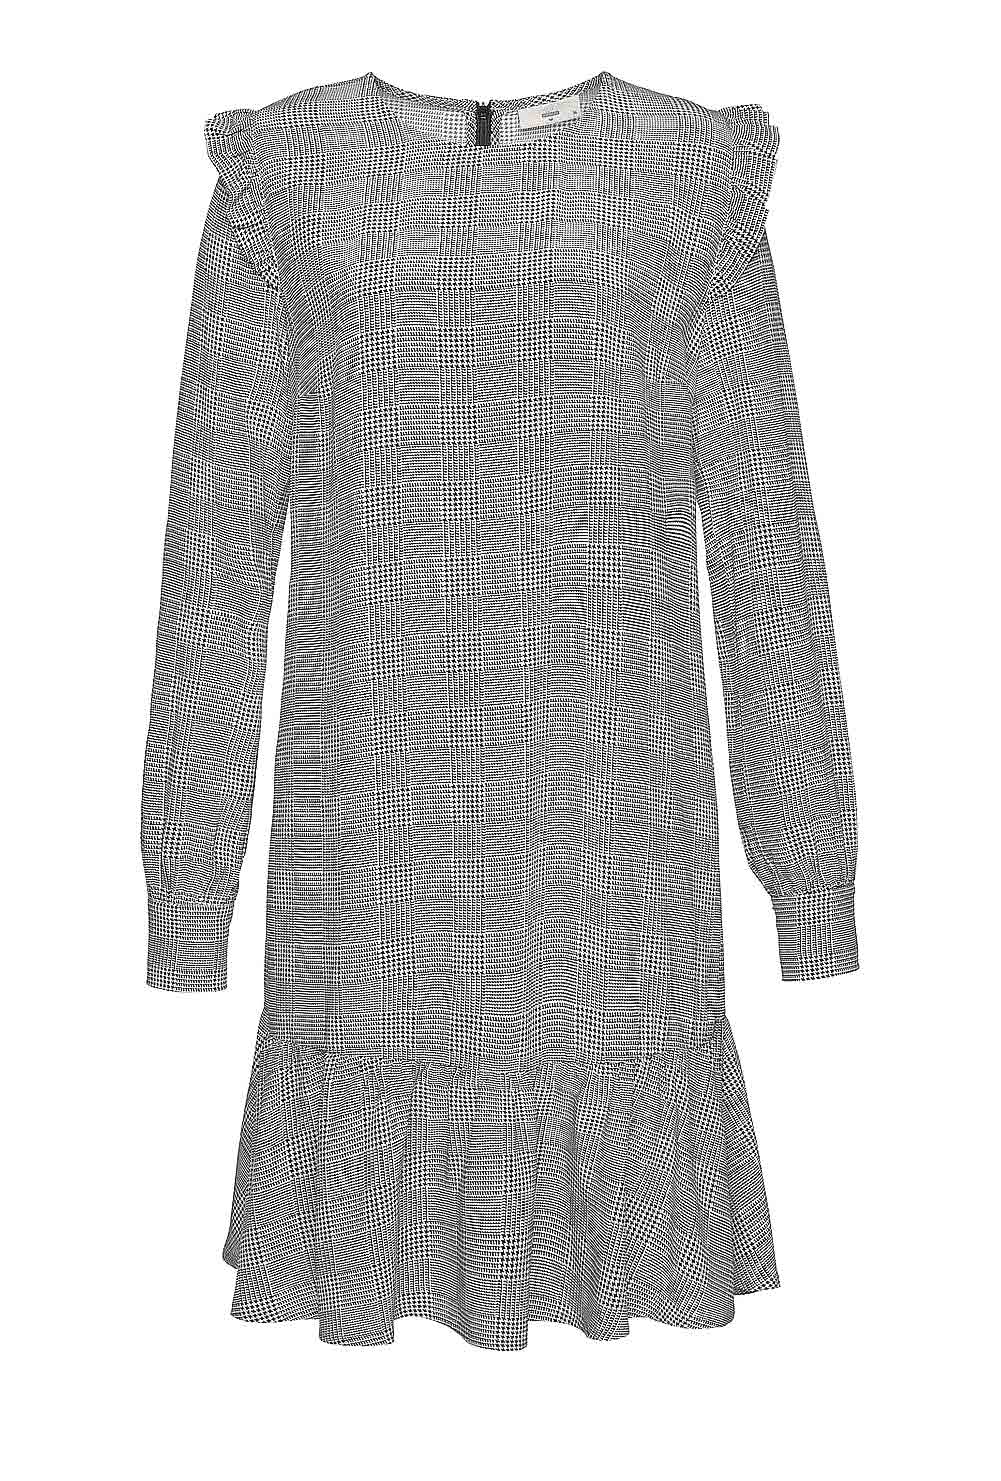 MINIMUM Damen Marken-Kleid mit Volants »Barbette«, schwarz-weiß